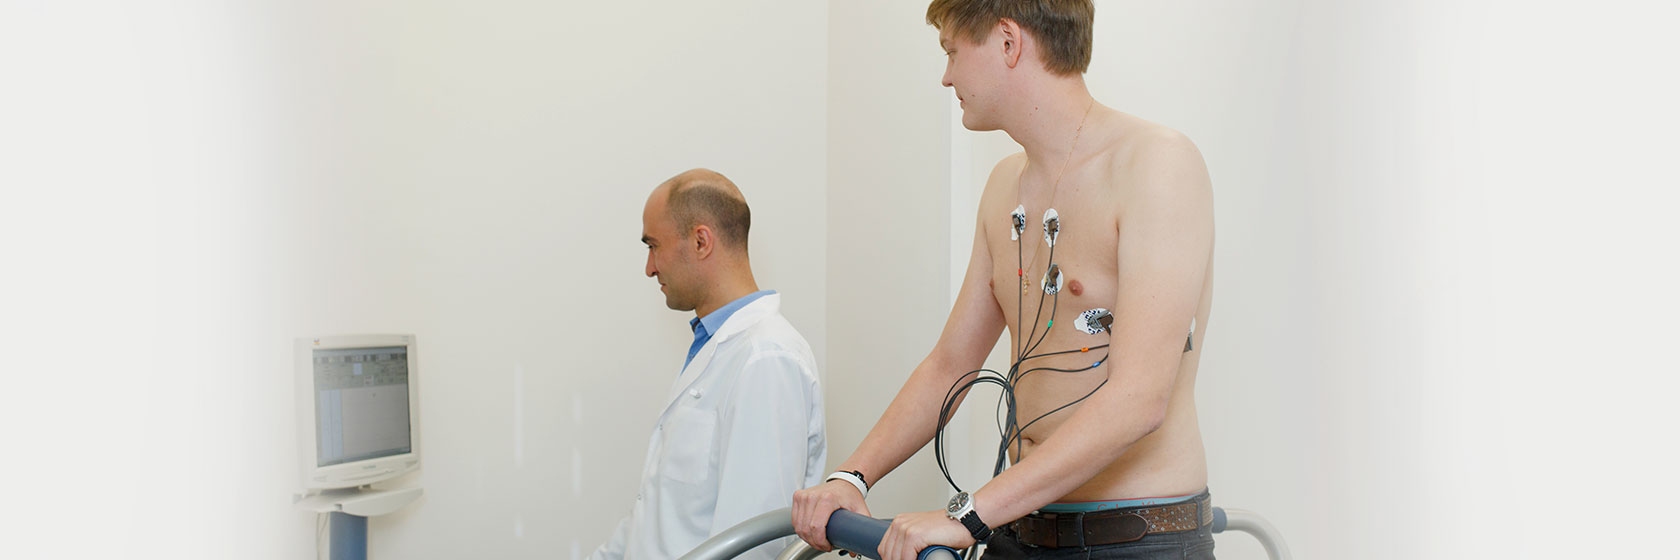 Пациент выполняет тредмил-тест или ЭКГ под нагрузкой – идет по движущейся дорожке под контролем электрокардиографа